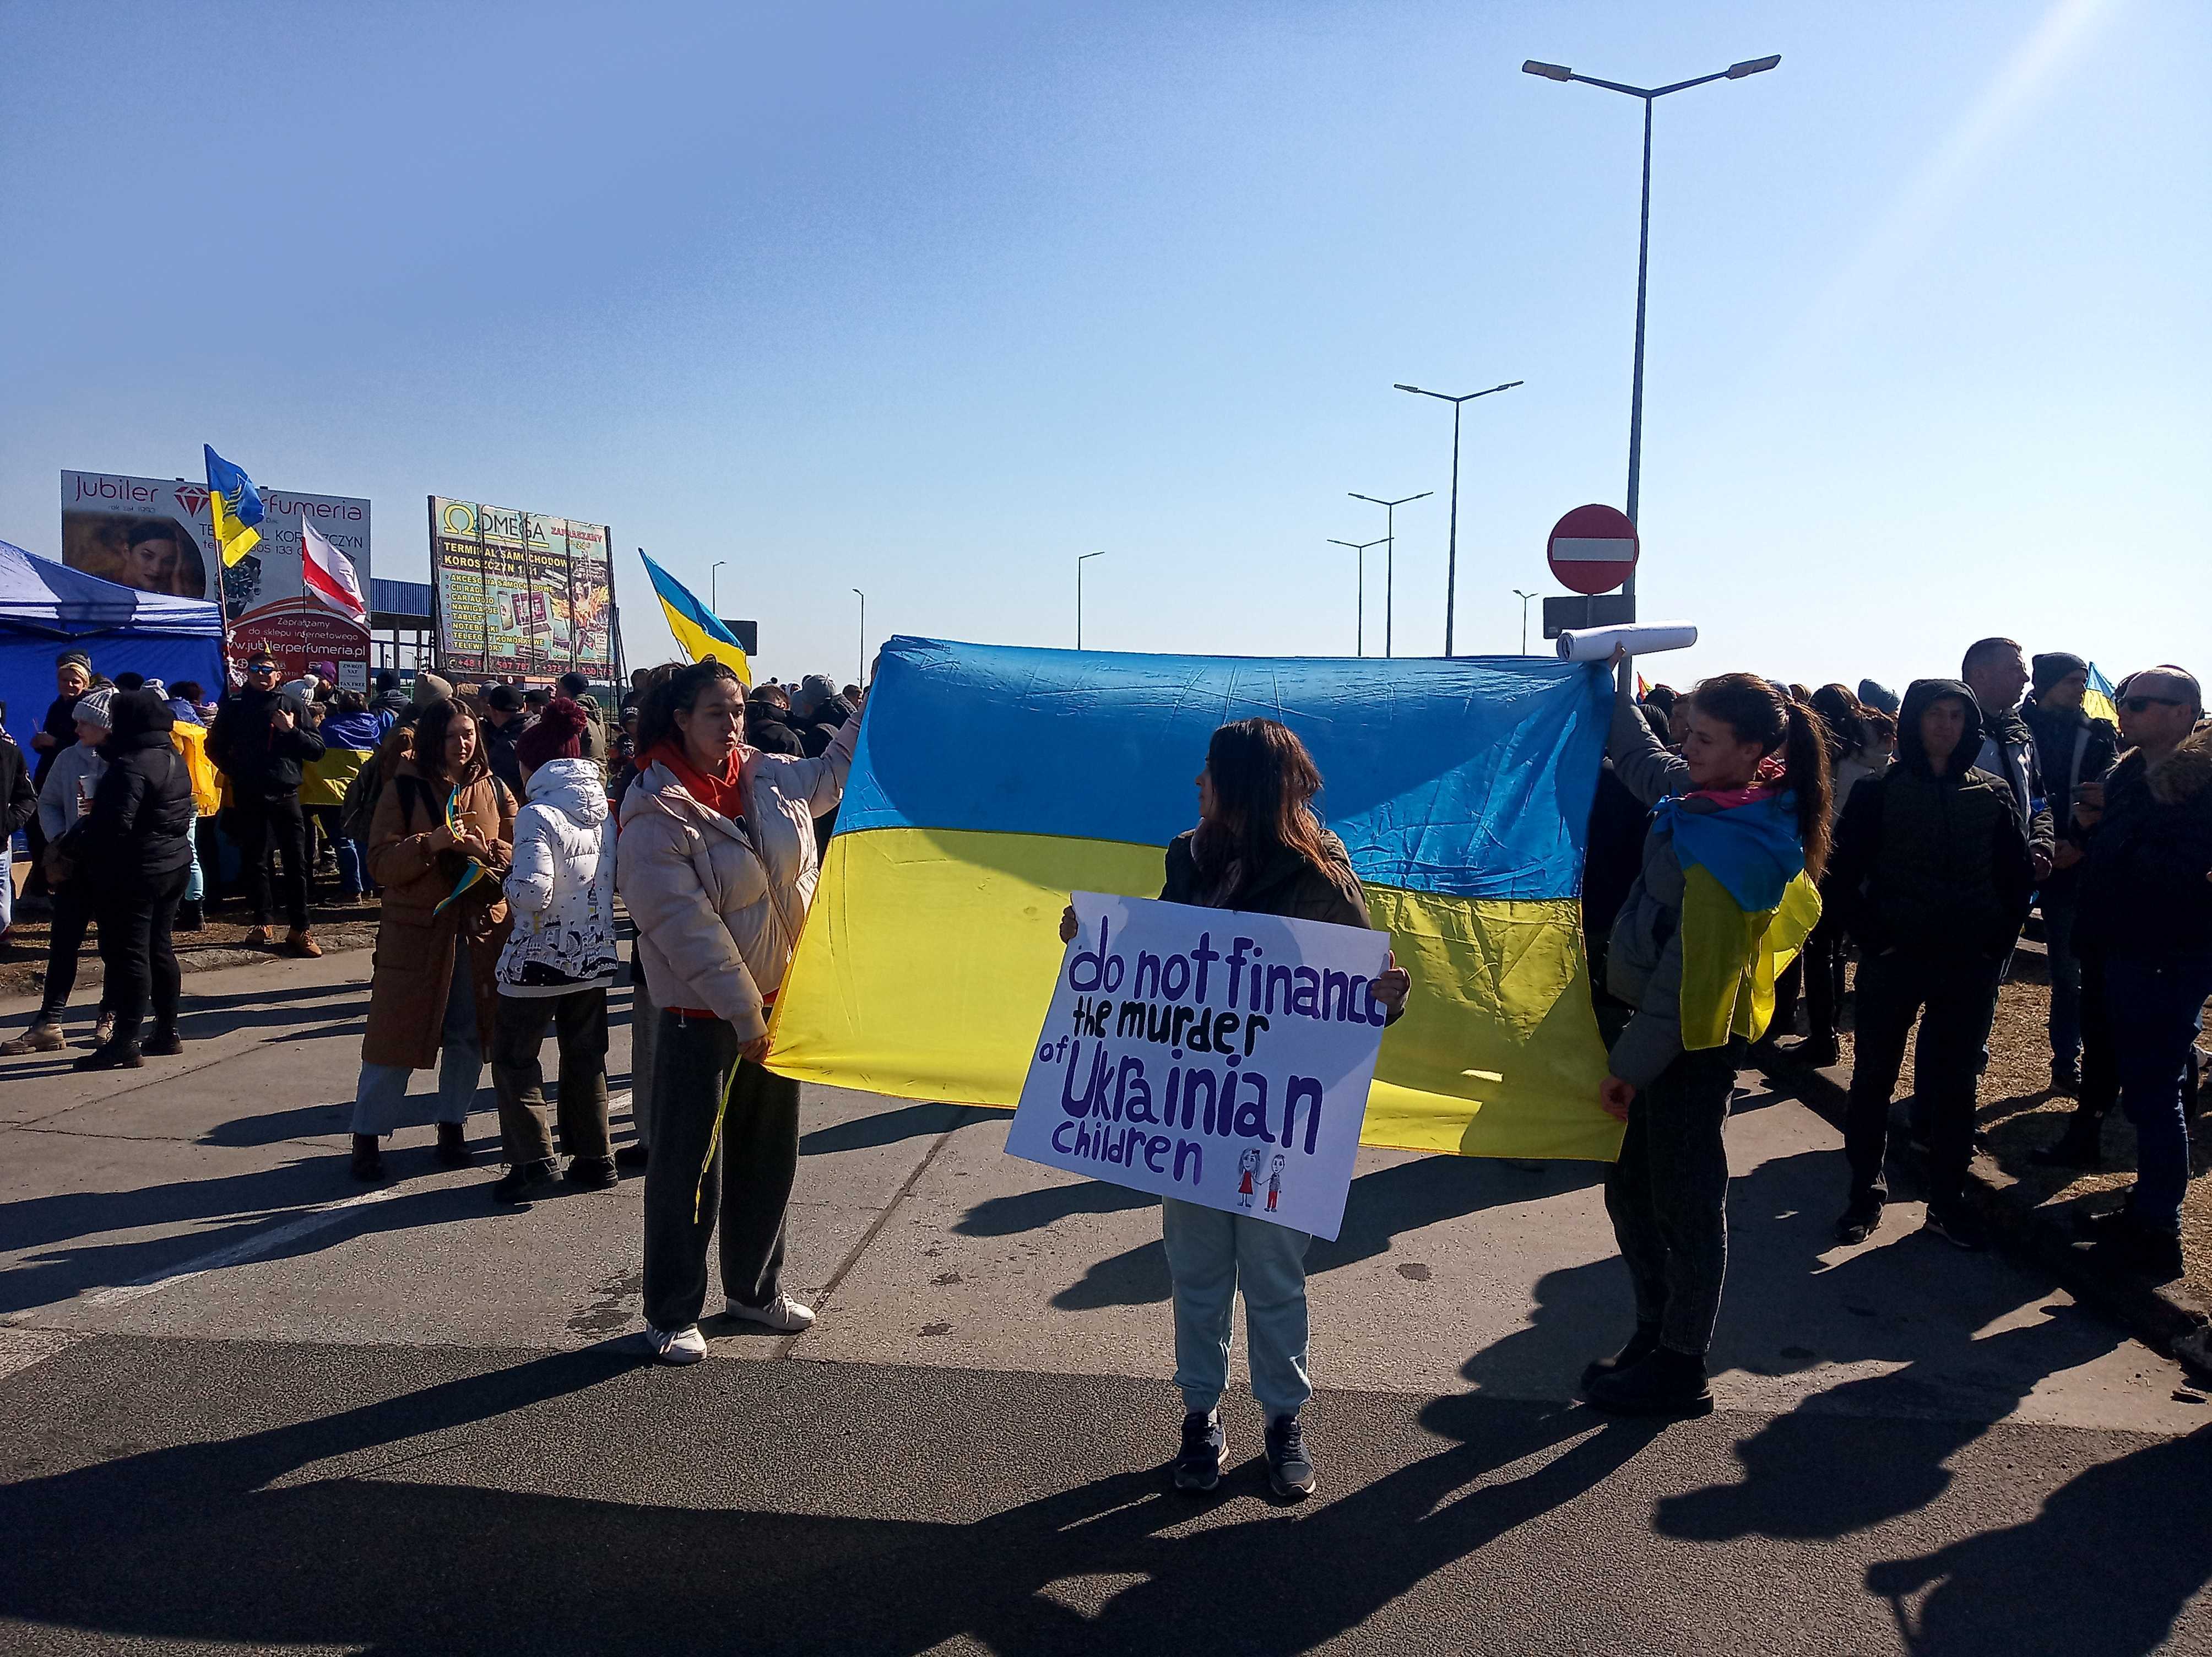 “Рускій ТIR - йди геть!”: як активісти блокують вантажівки на кордоні [ВІДЕО] img 20220319 112500 1